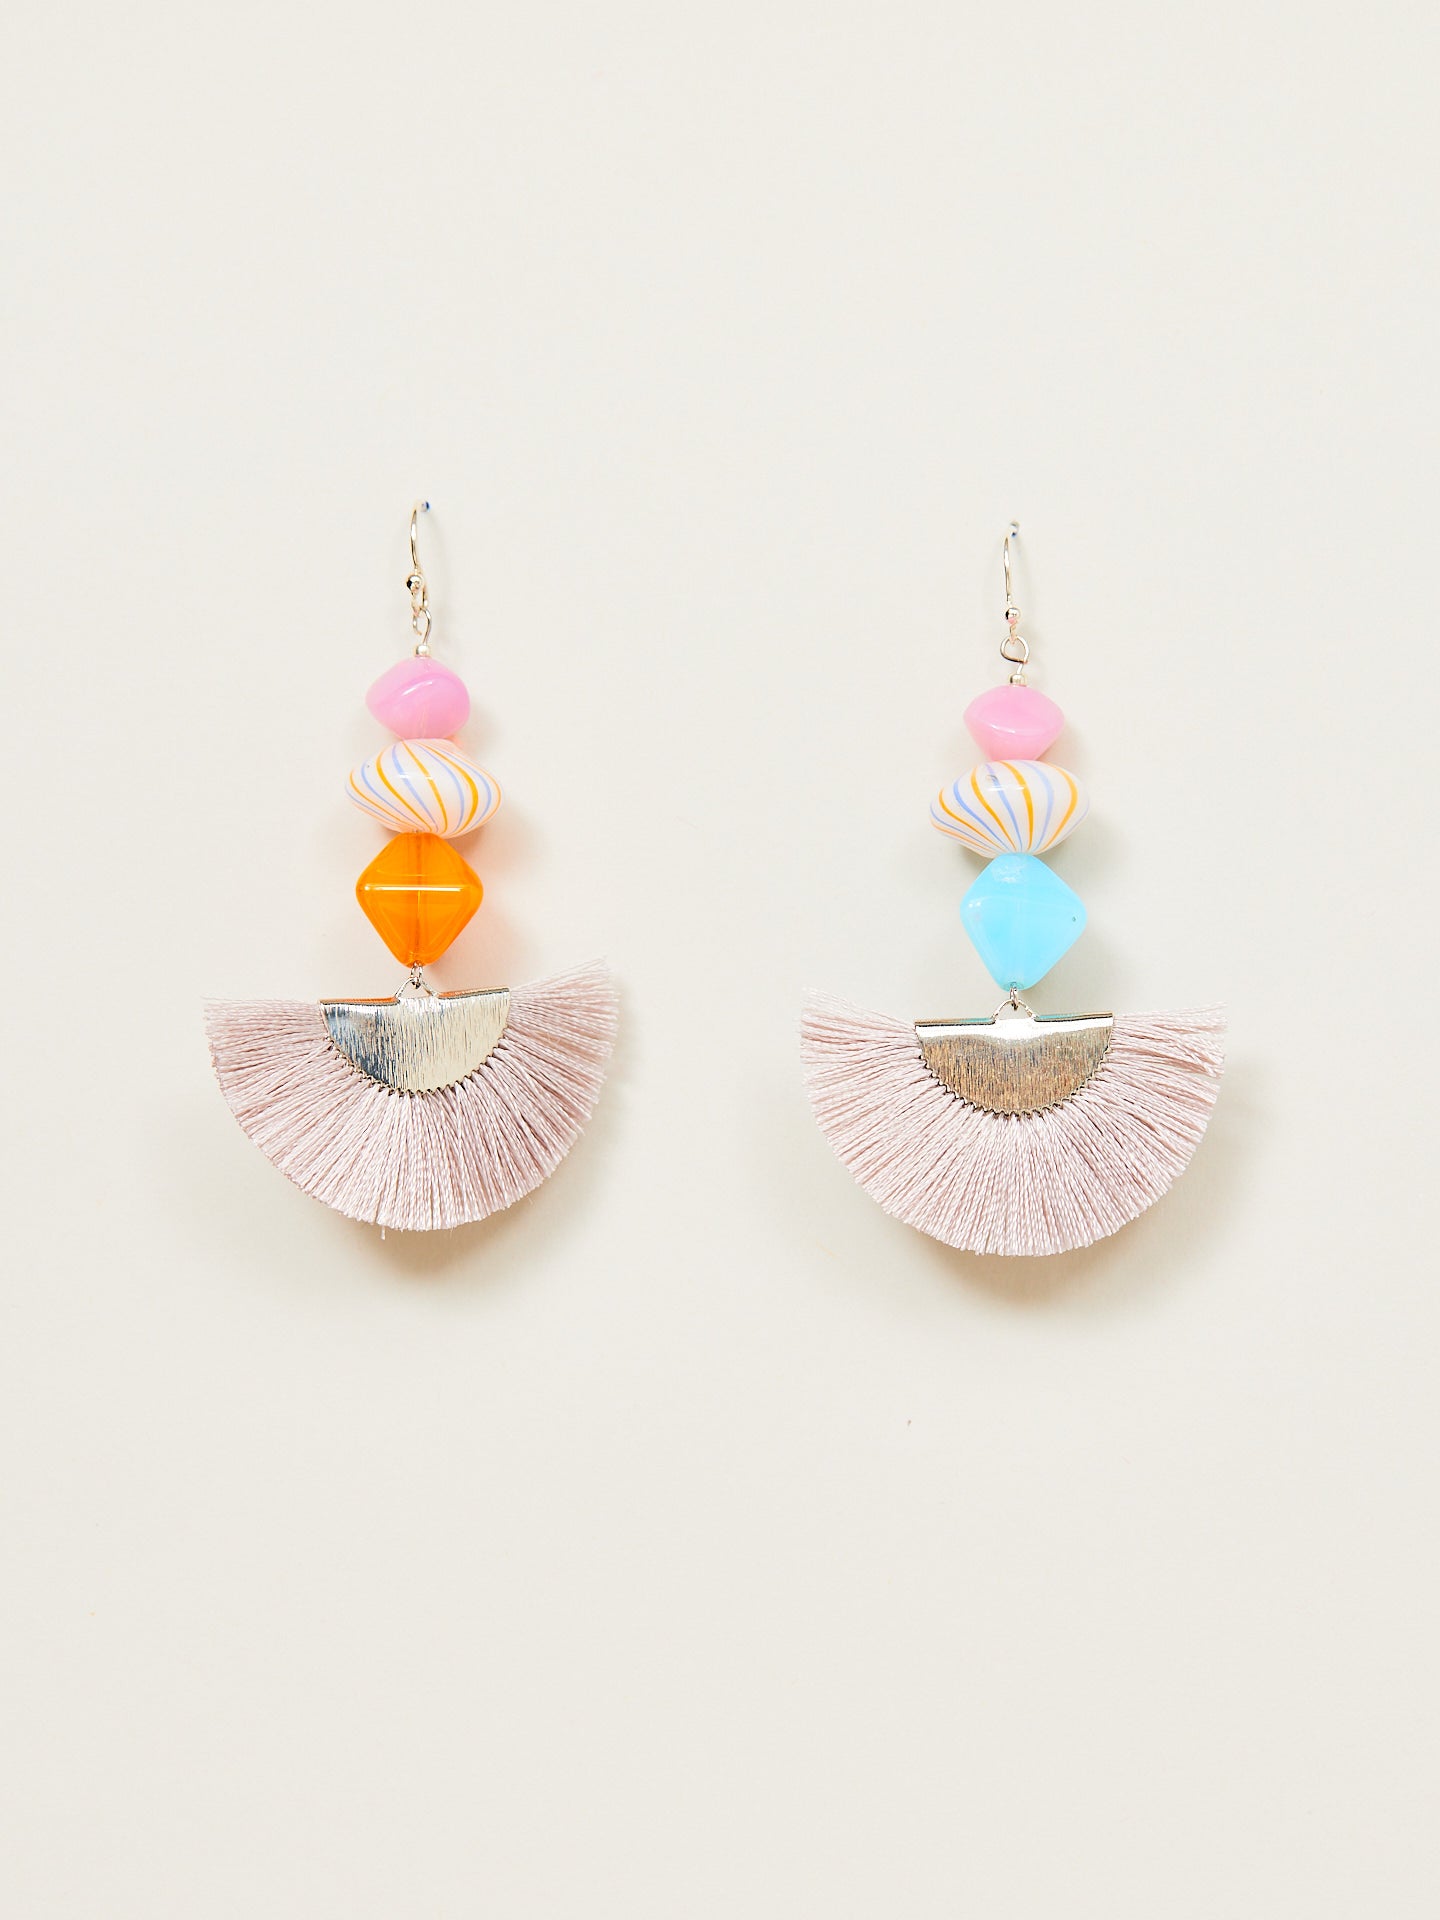 Kreativ gestaltetes Ohrringpärchen, bestehend aus bunten Perlen und einem weichen, silberfarbenen Fächer aus kleinen Fäden.